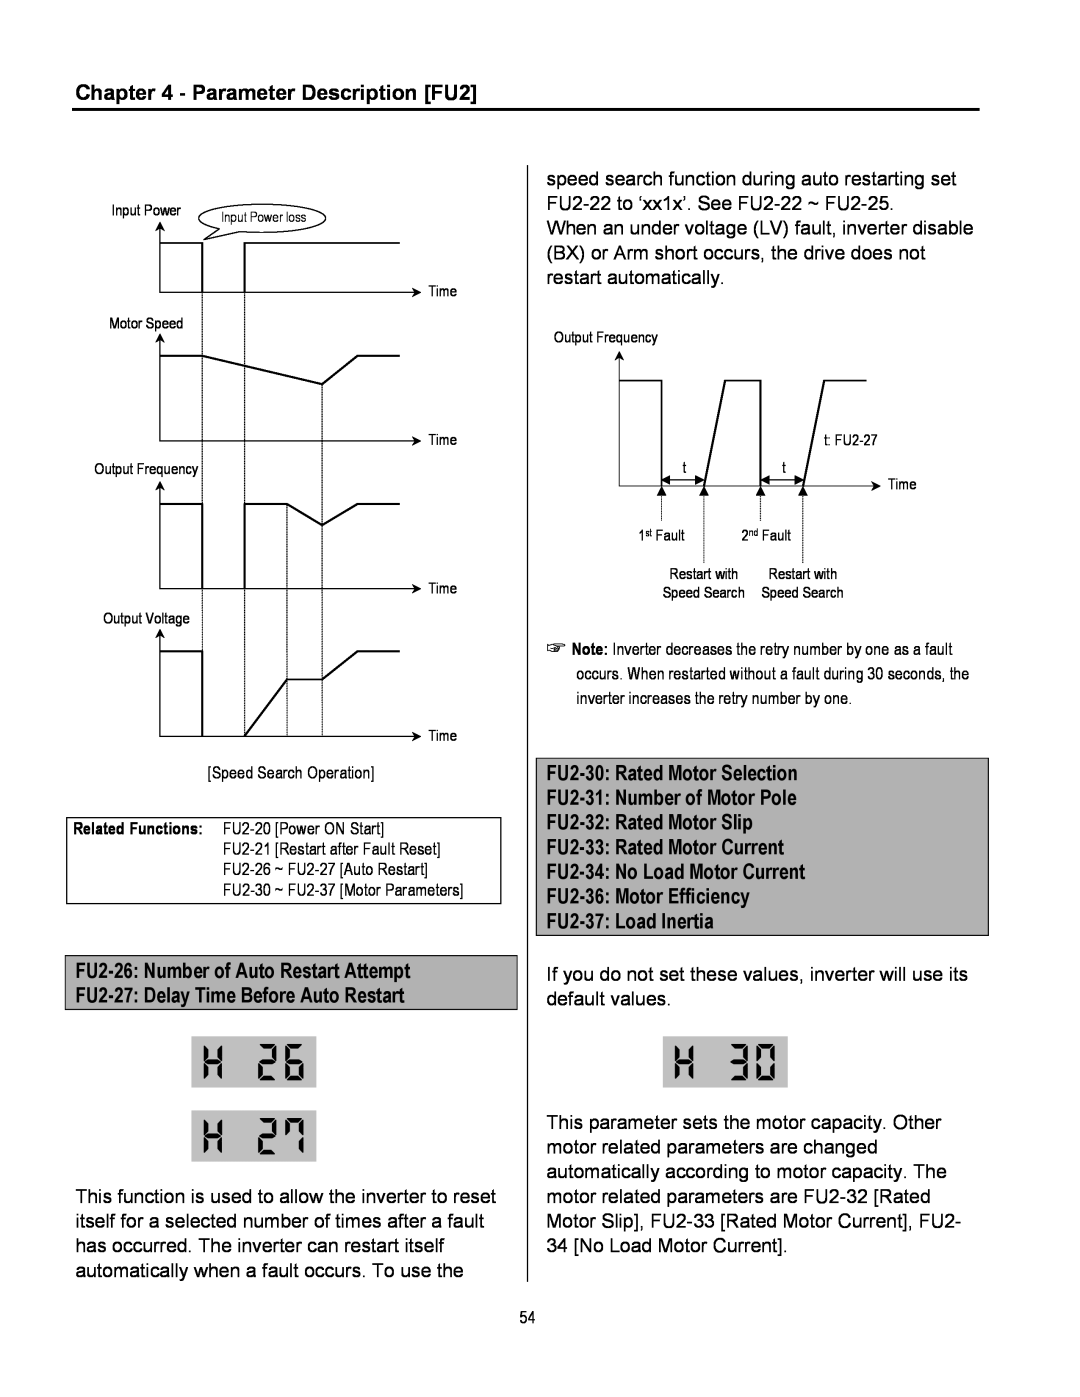 Cleveland Range inverter Parameter Description FU2, FU2-26 Number of Auto Restart Attempt, FU2-30 Rated Motor Selection 